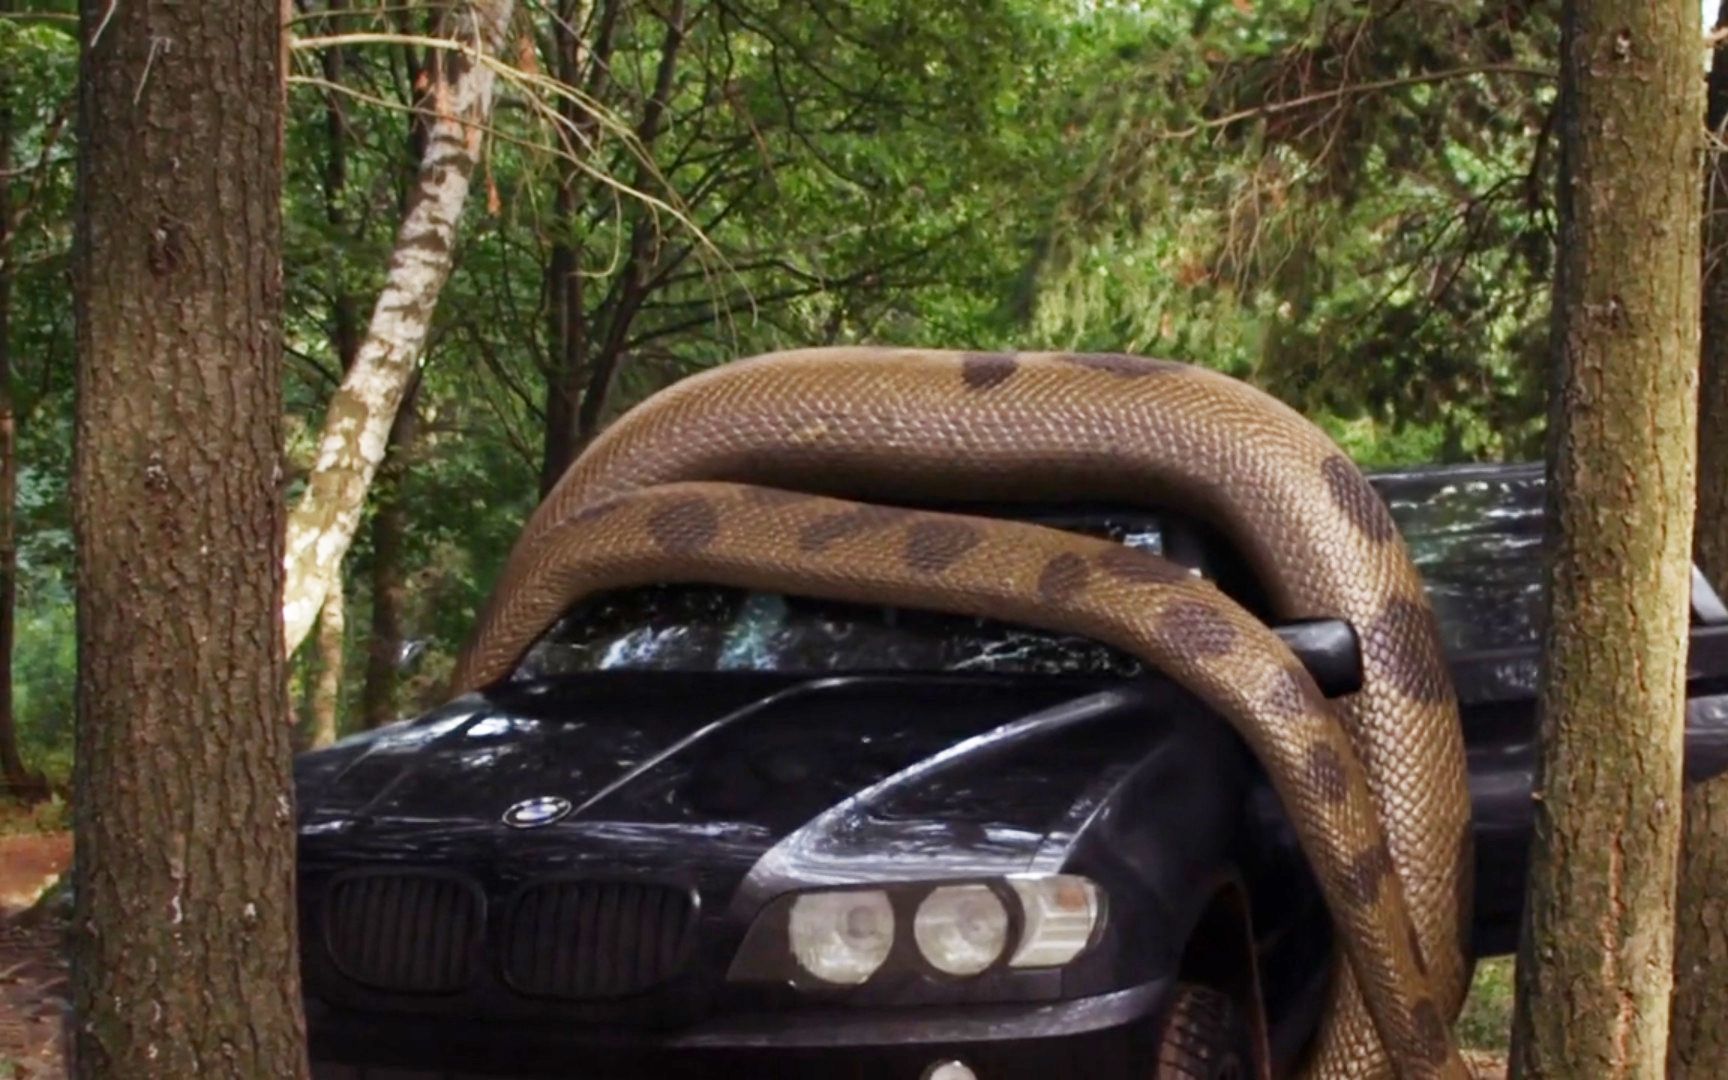 《巨鳄战狂蟒》:女孩驾车躲避巨鳄袭击,不料遇见更大的巨蟒,众人瞬间